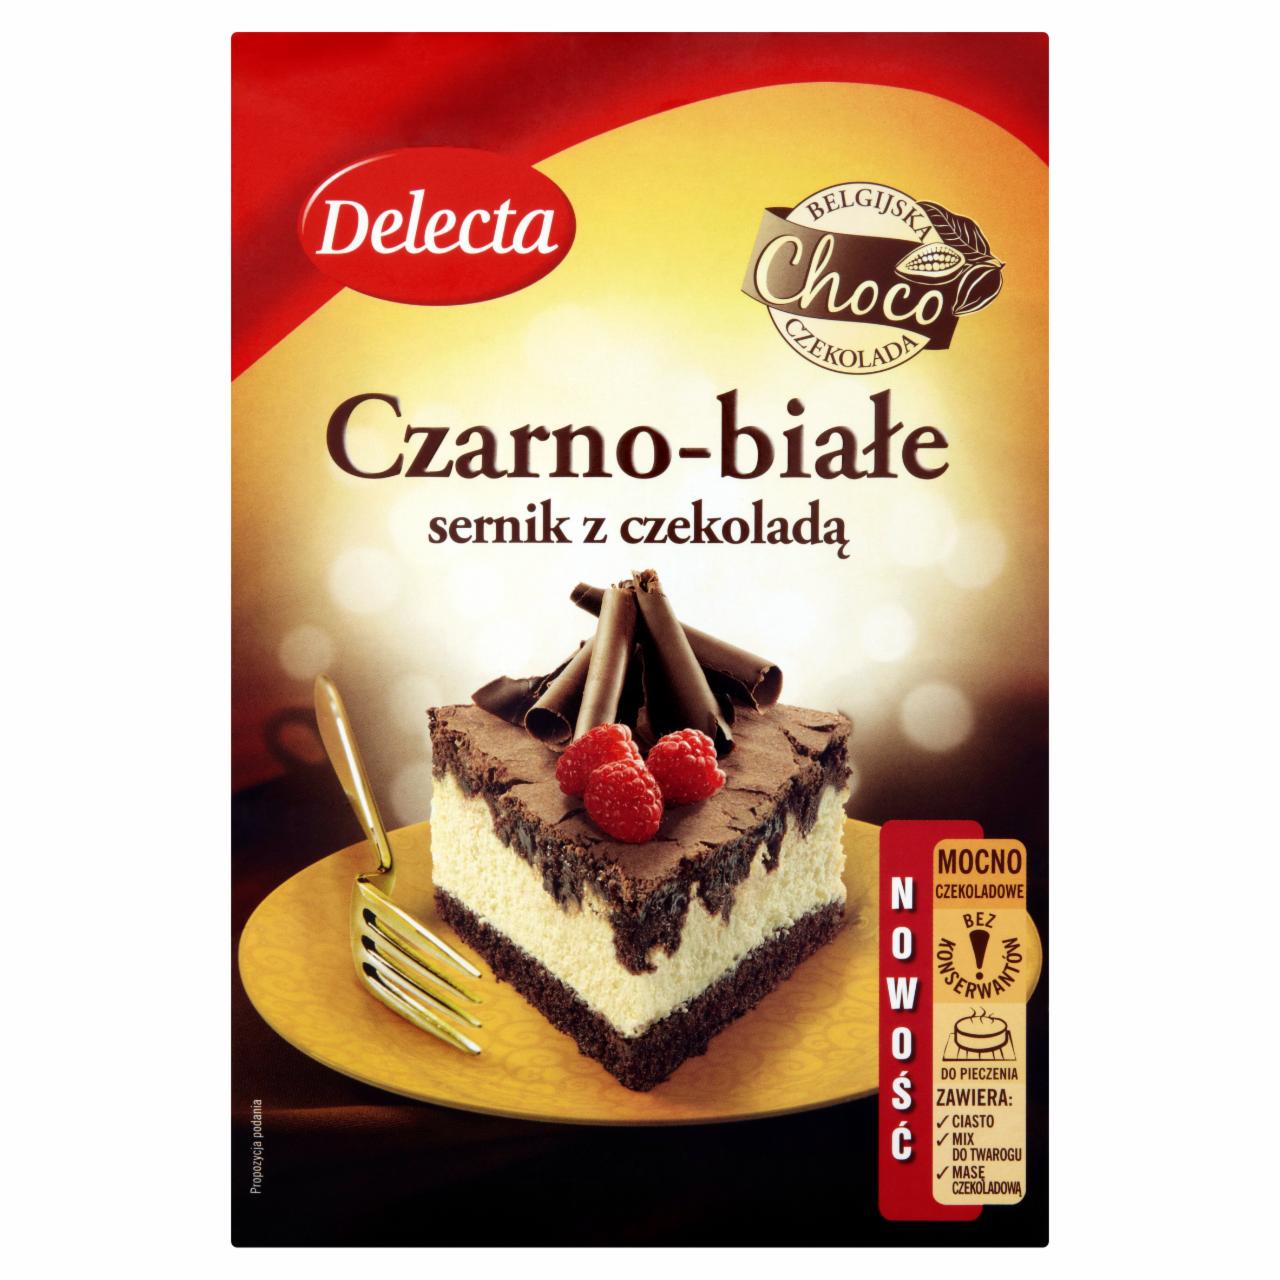 Zdjęcia - Delecta Czarno-białe sernik z czekoladą 450 g